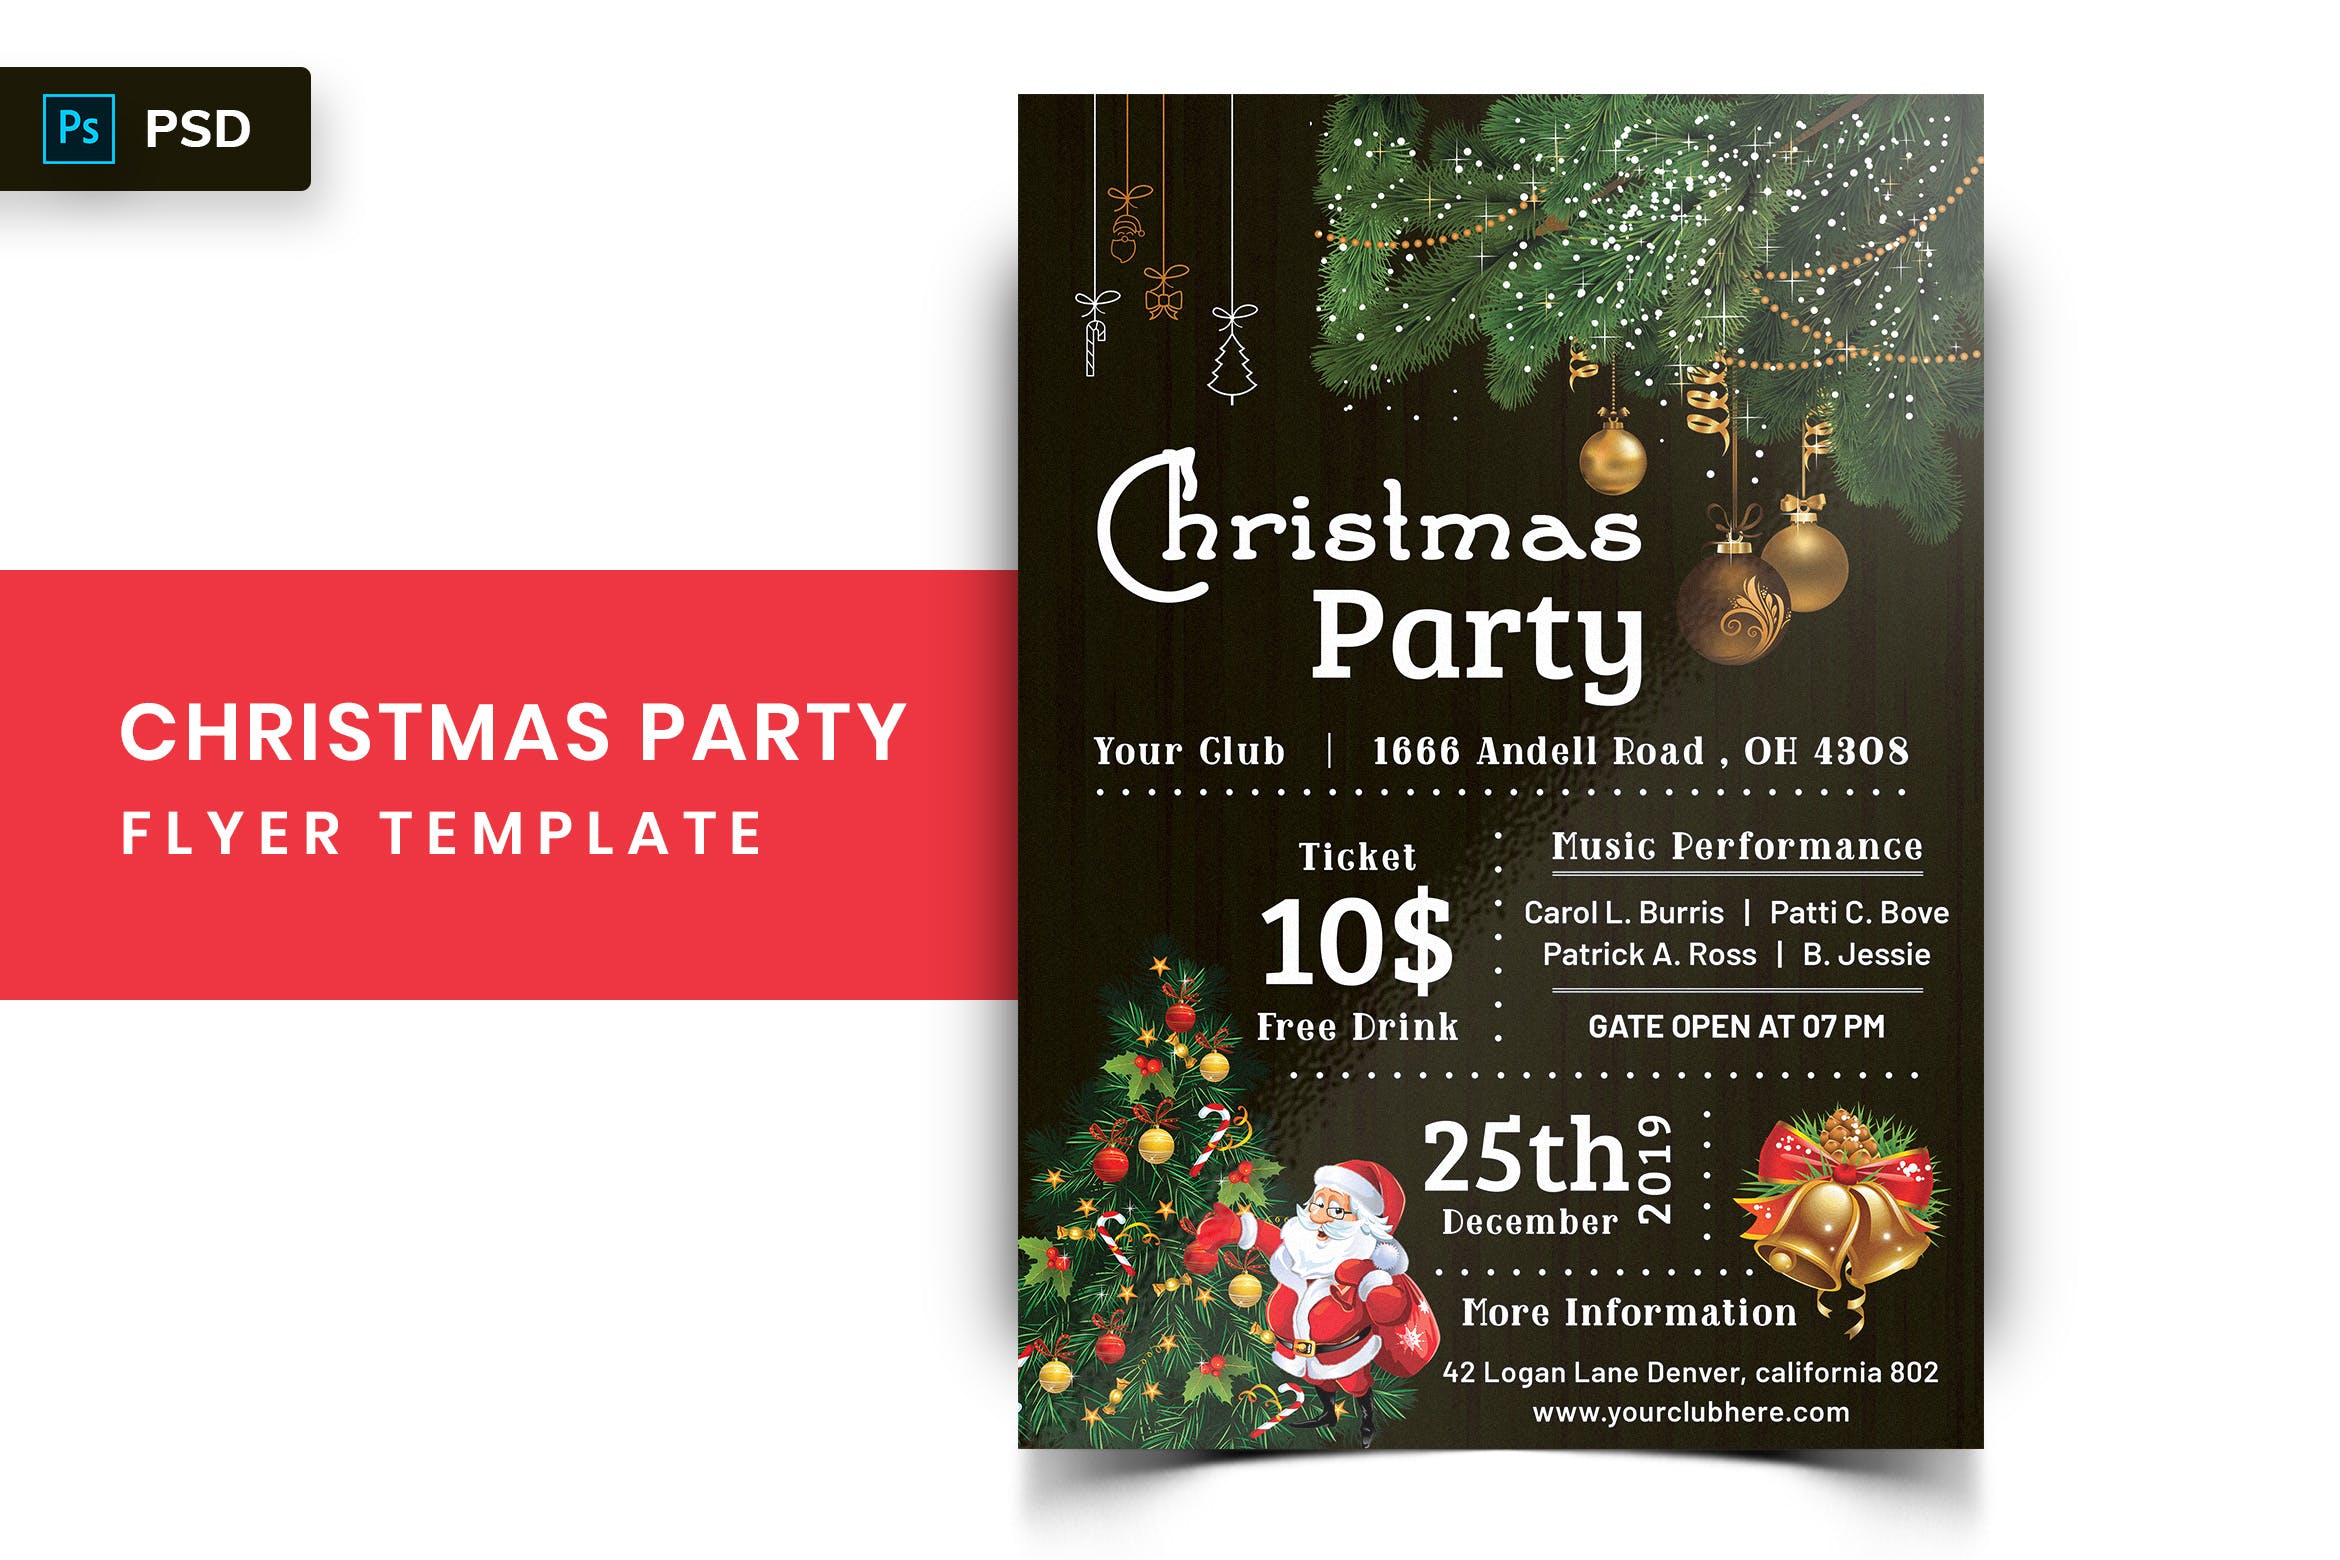 圣诞节主题派对邀请海报传单模板v2 Christmas Party Flyer-02插图